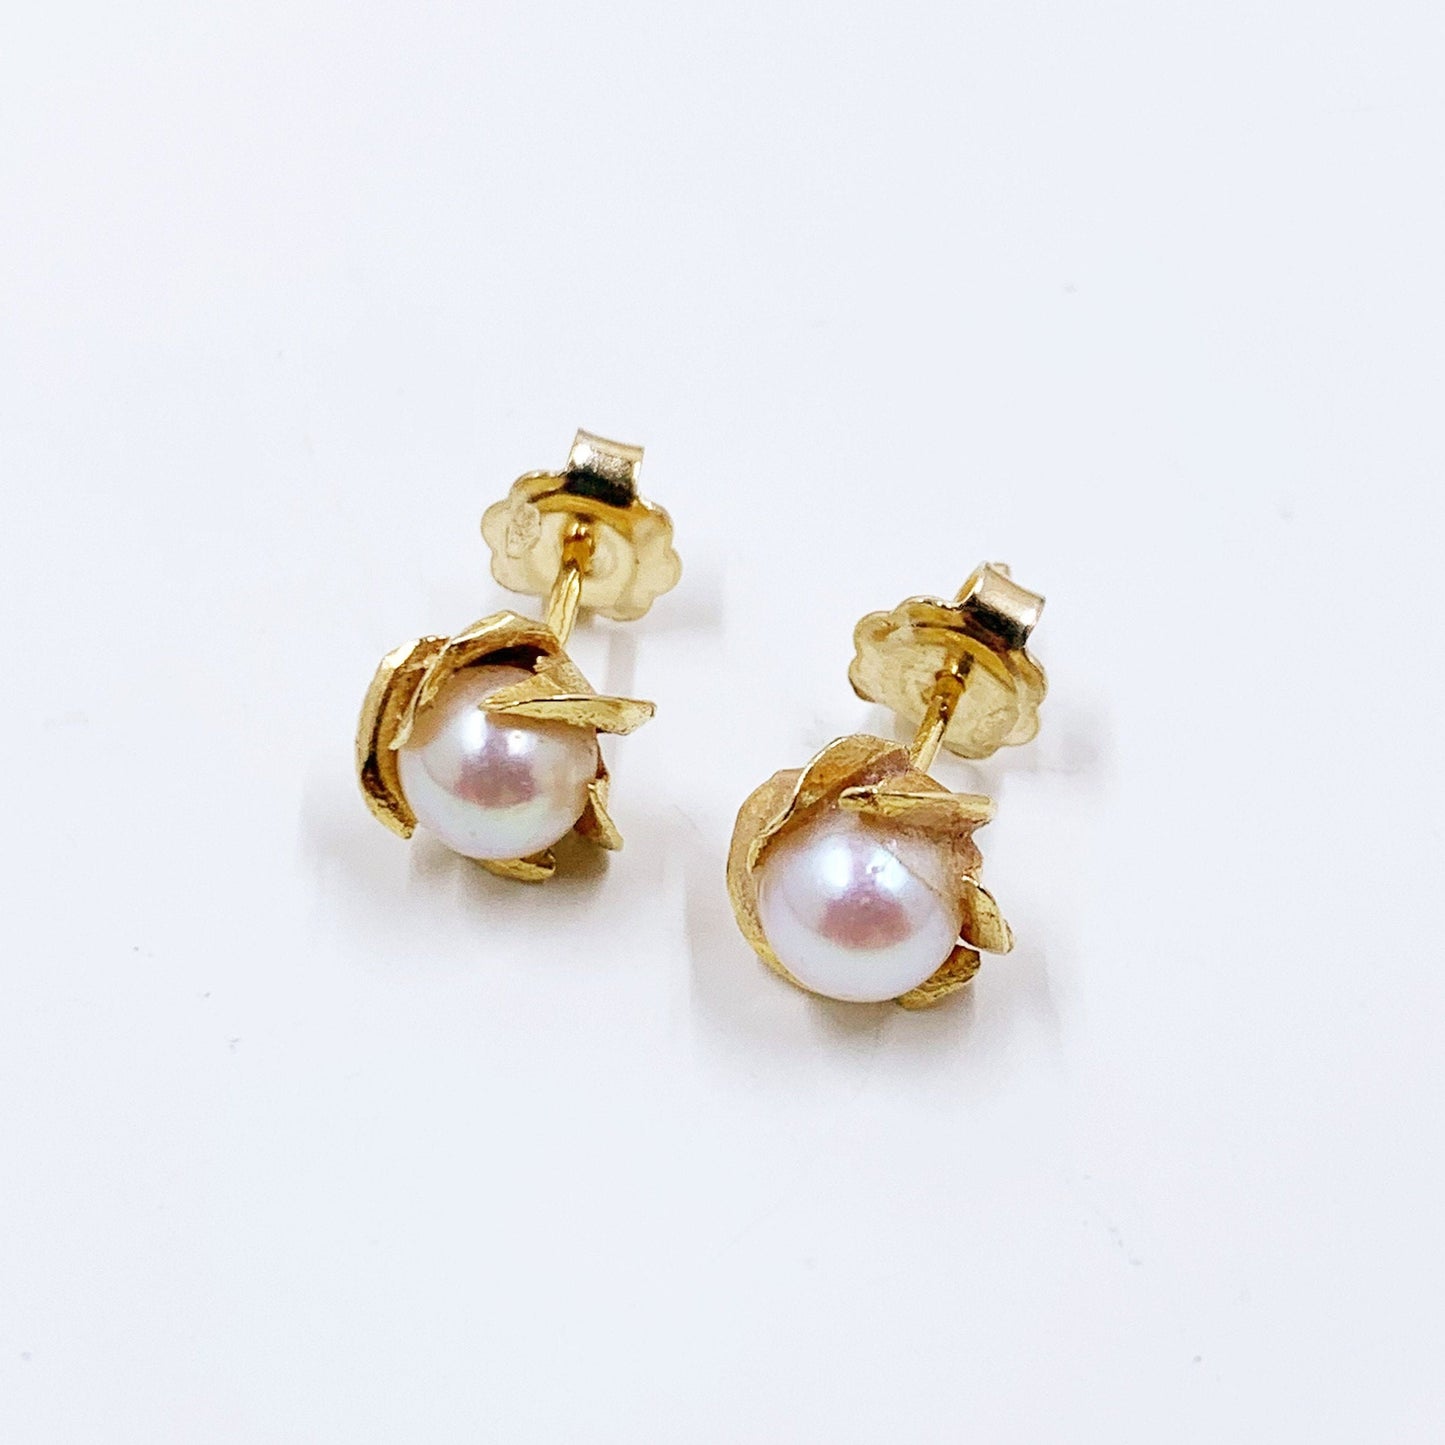 Vintage 18K Gold Pearl Stud Earrings | Classic Pearl Flower Earrings | 18K Pearl Earrings | Egyptian 18K Gold